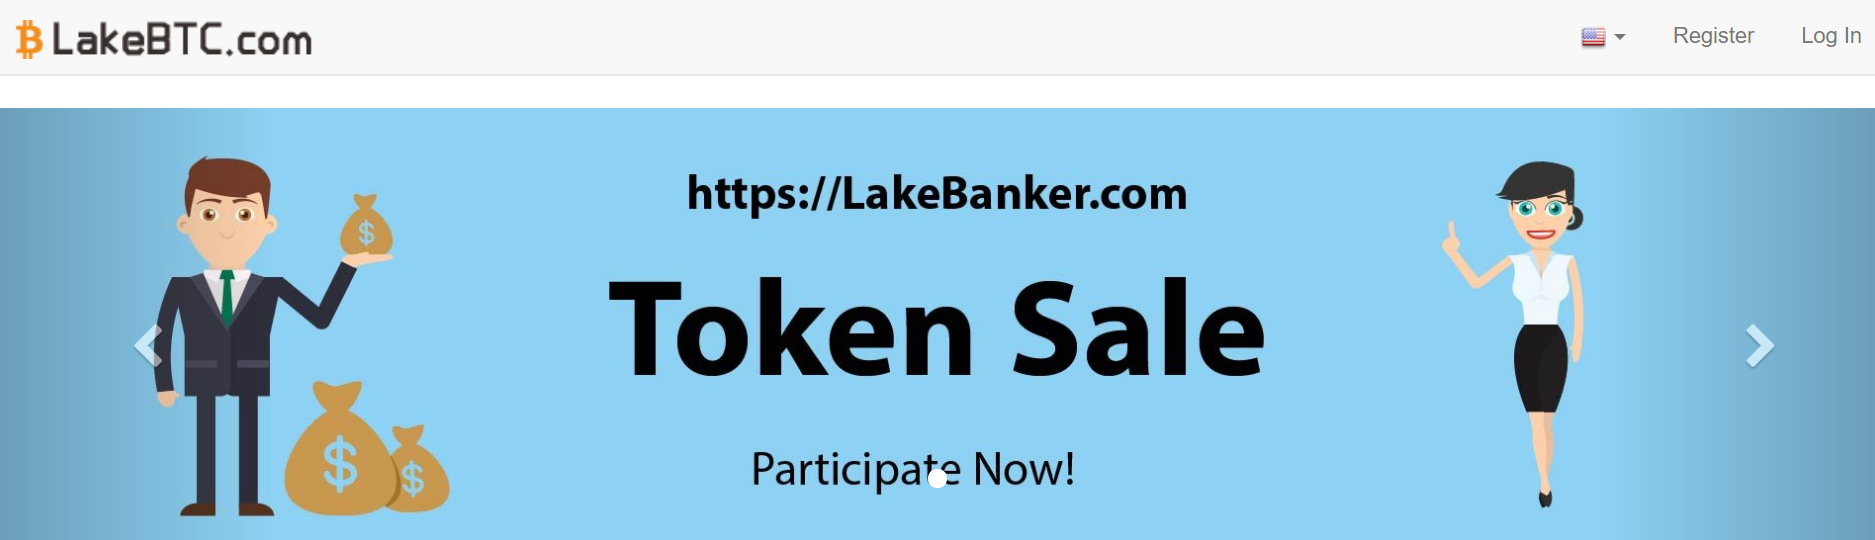 Získajte bitcoiny na burze LakeBTC